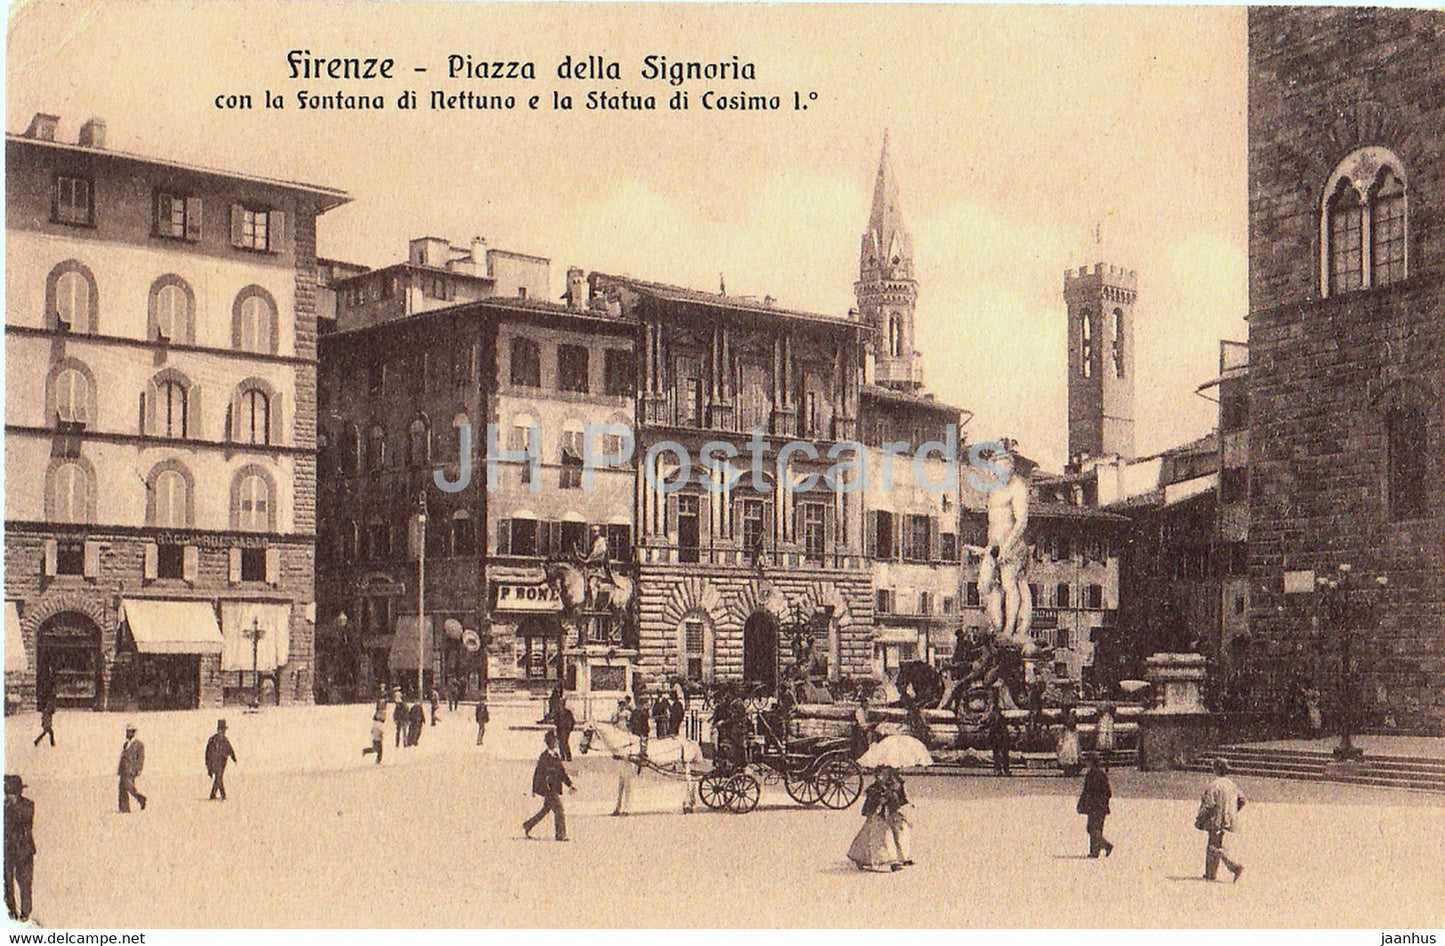 Firenze - Florence - Piazza della Signoria con la Fontana di Nettuno e la Statua - 24020  old postcard - Italy - unused - JH Postcards